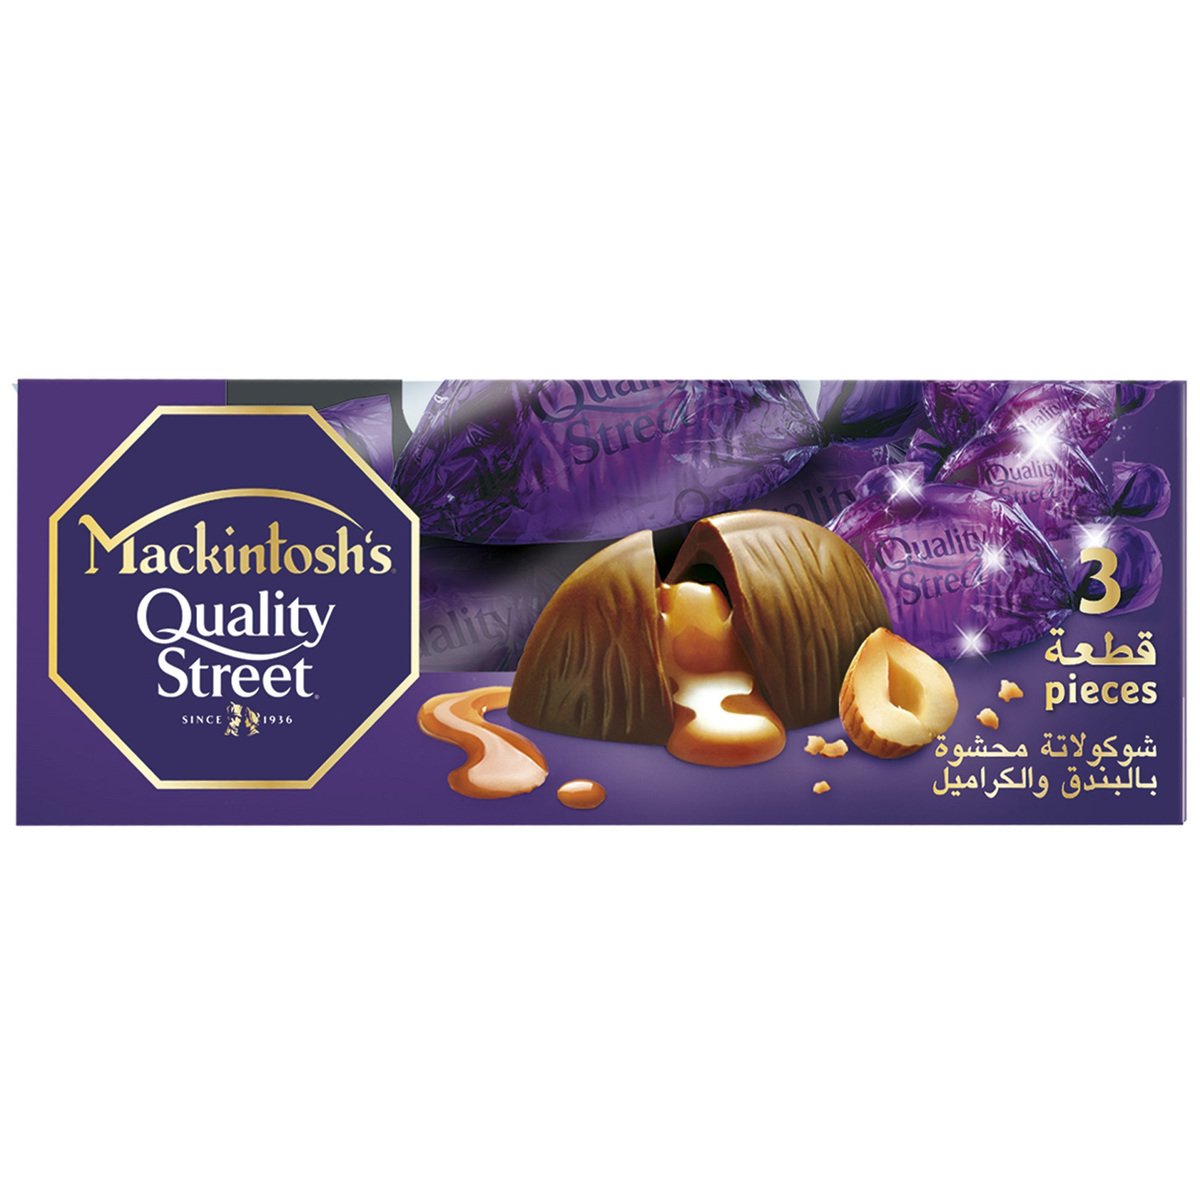 Mackintosh's Quality Street Chocolate 27 g